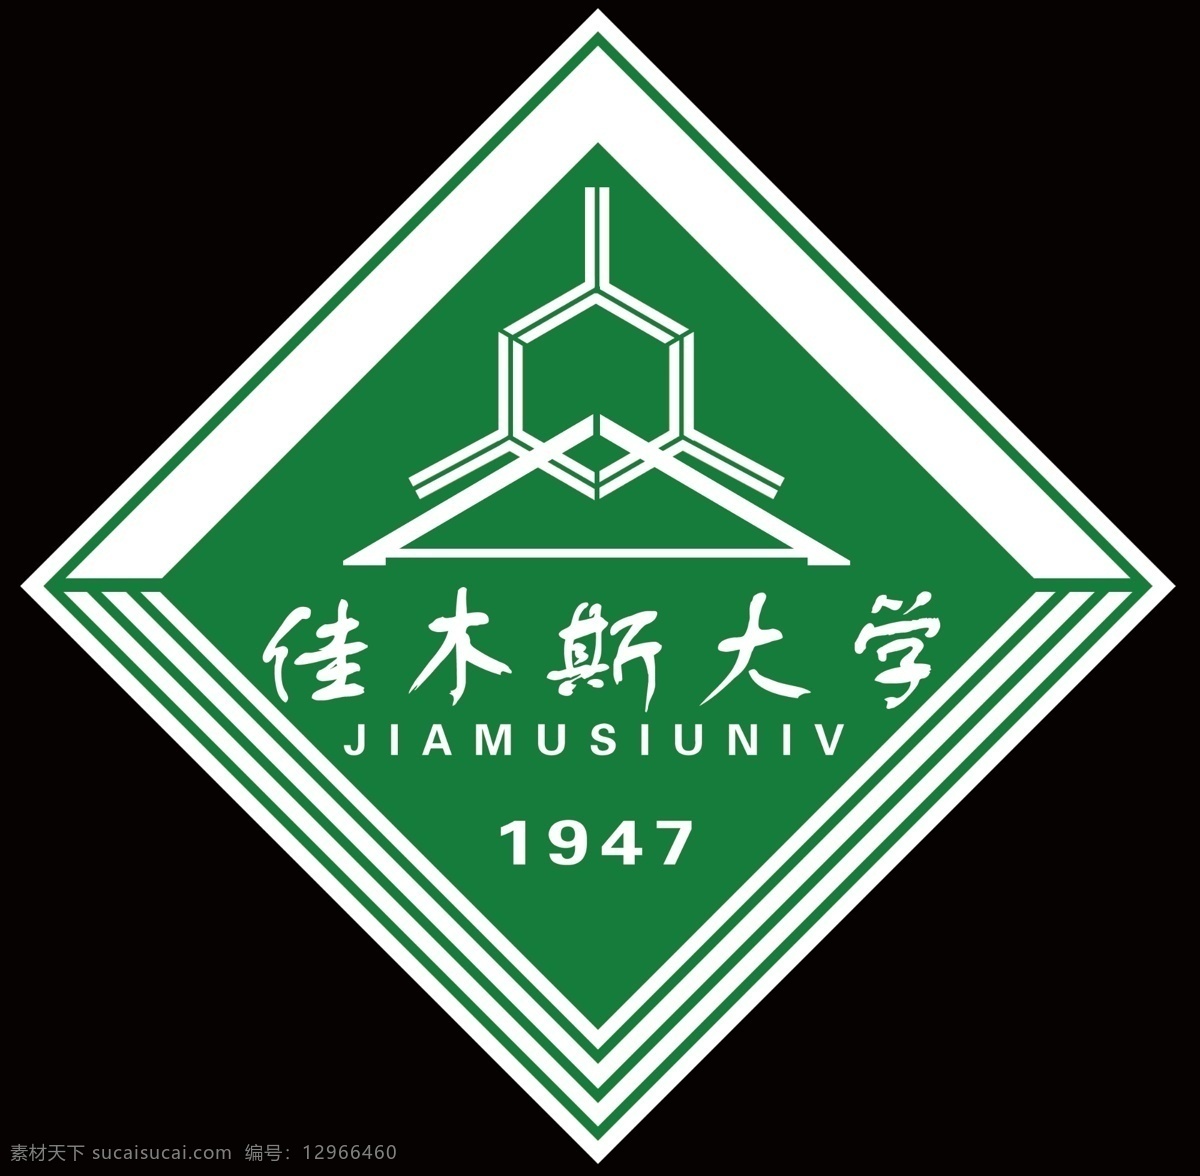 佳木斯大学 标志 绿色 1947 标志设计 广告设计模板 源文件